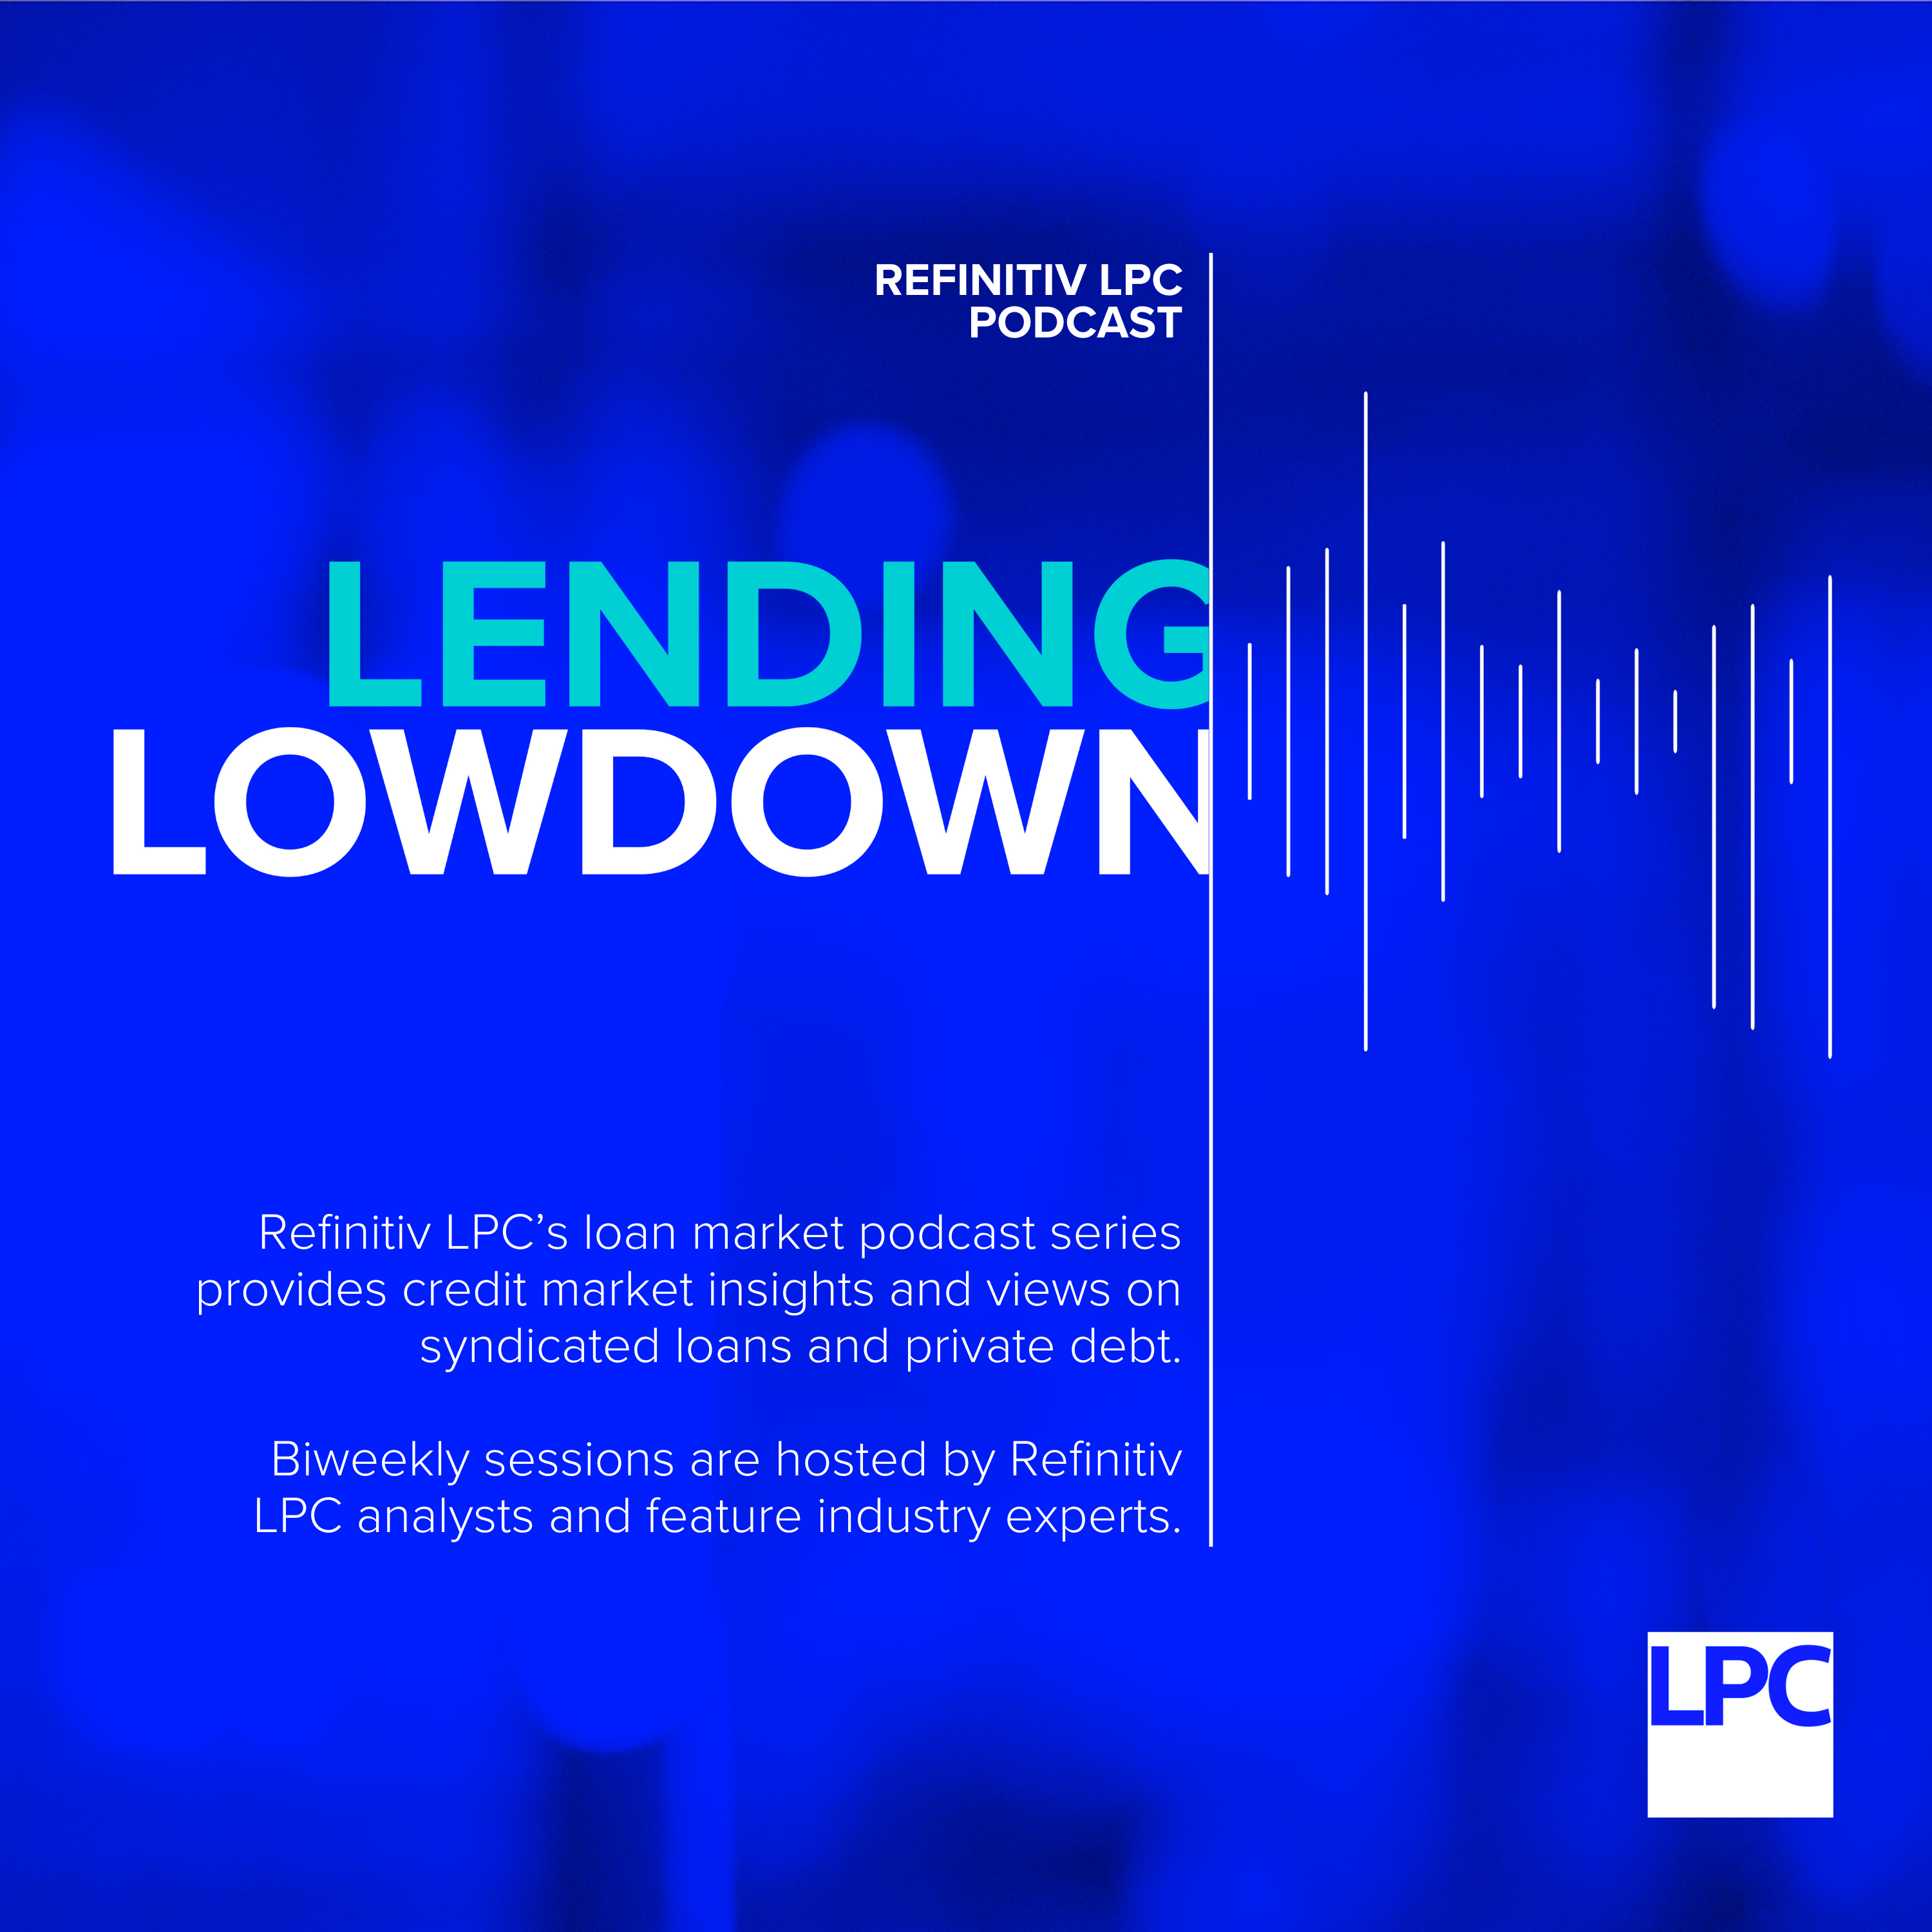 Lending Lowdown Podcast - Series trailer